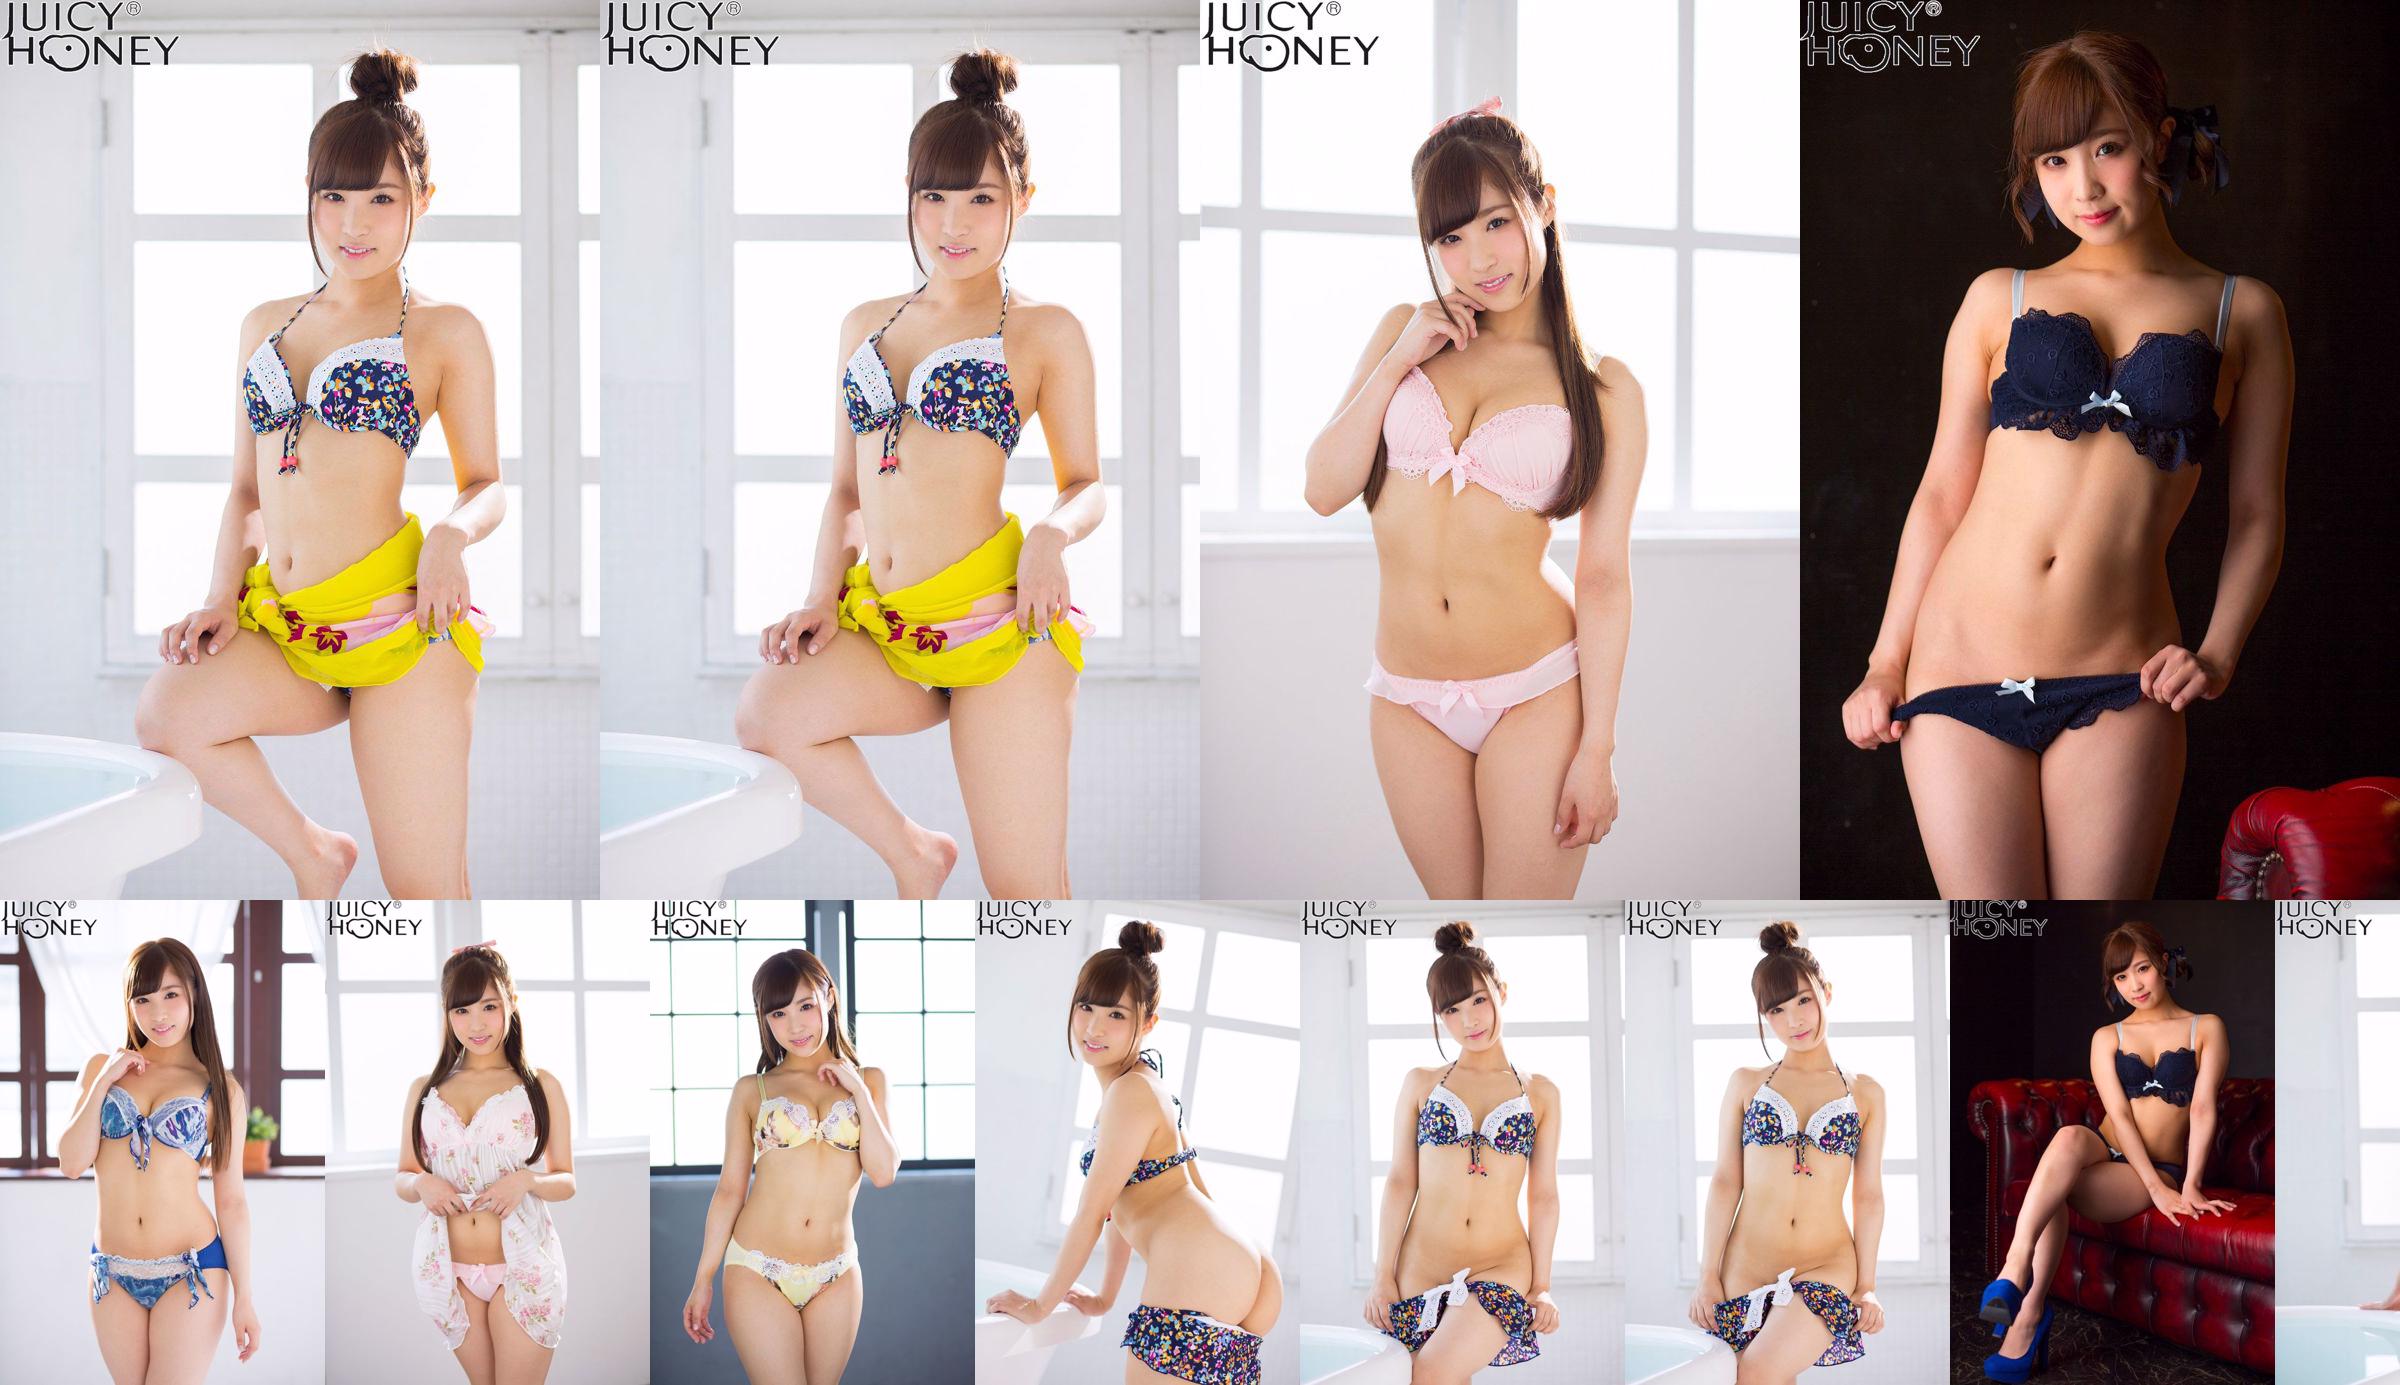 [X-City] Juicy Honey jh220 Noa Eikawa Noa Eikawa / Noa Eikawa No.7a3156 Página 1